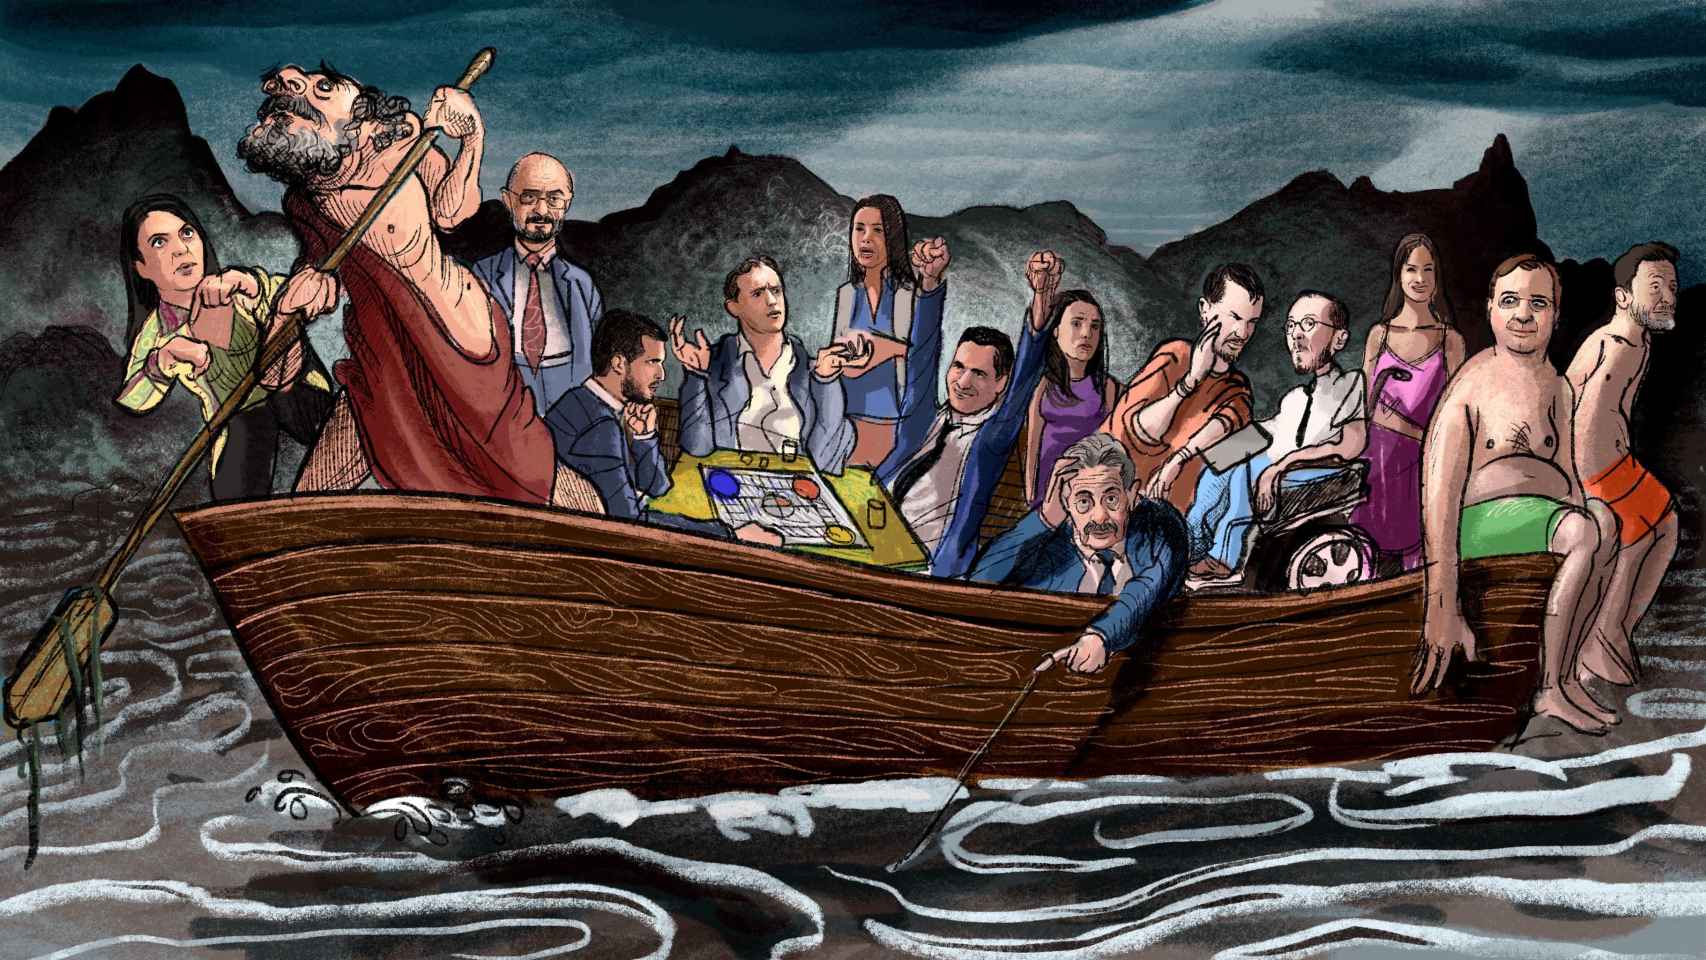 La barca de Caronte, llena de políticos.